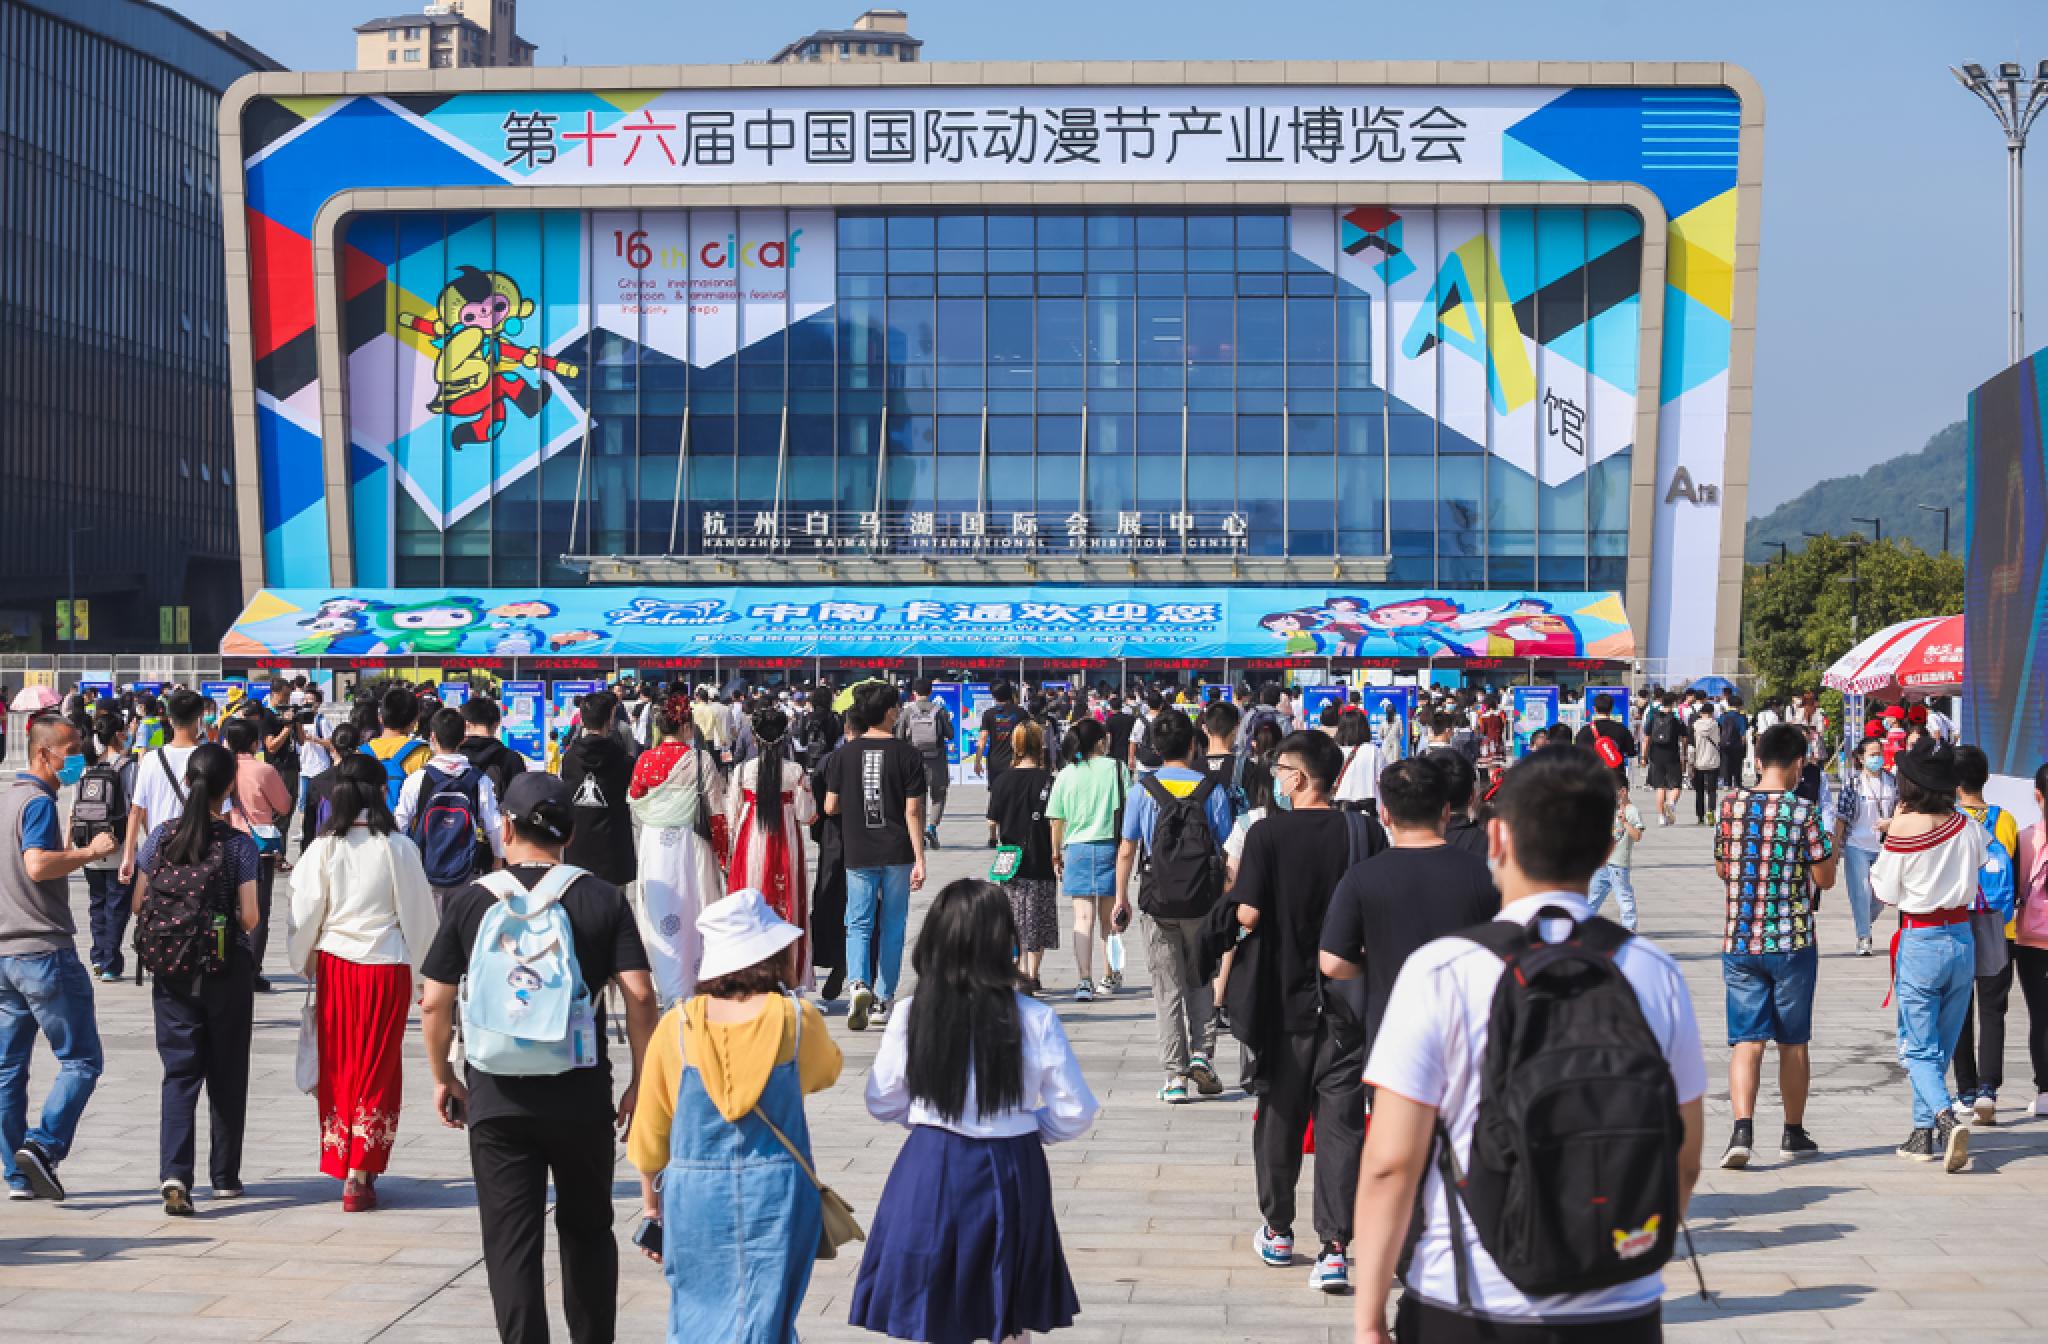 杭州国际动漫节2022图片